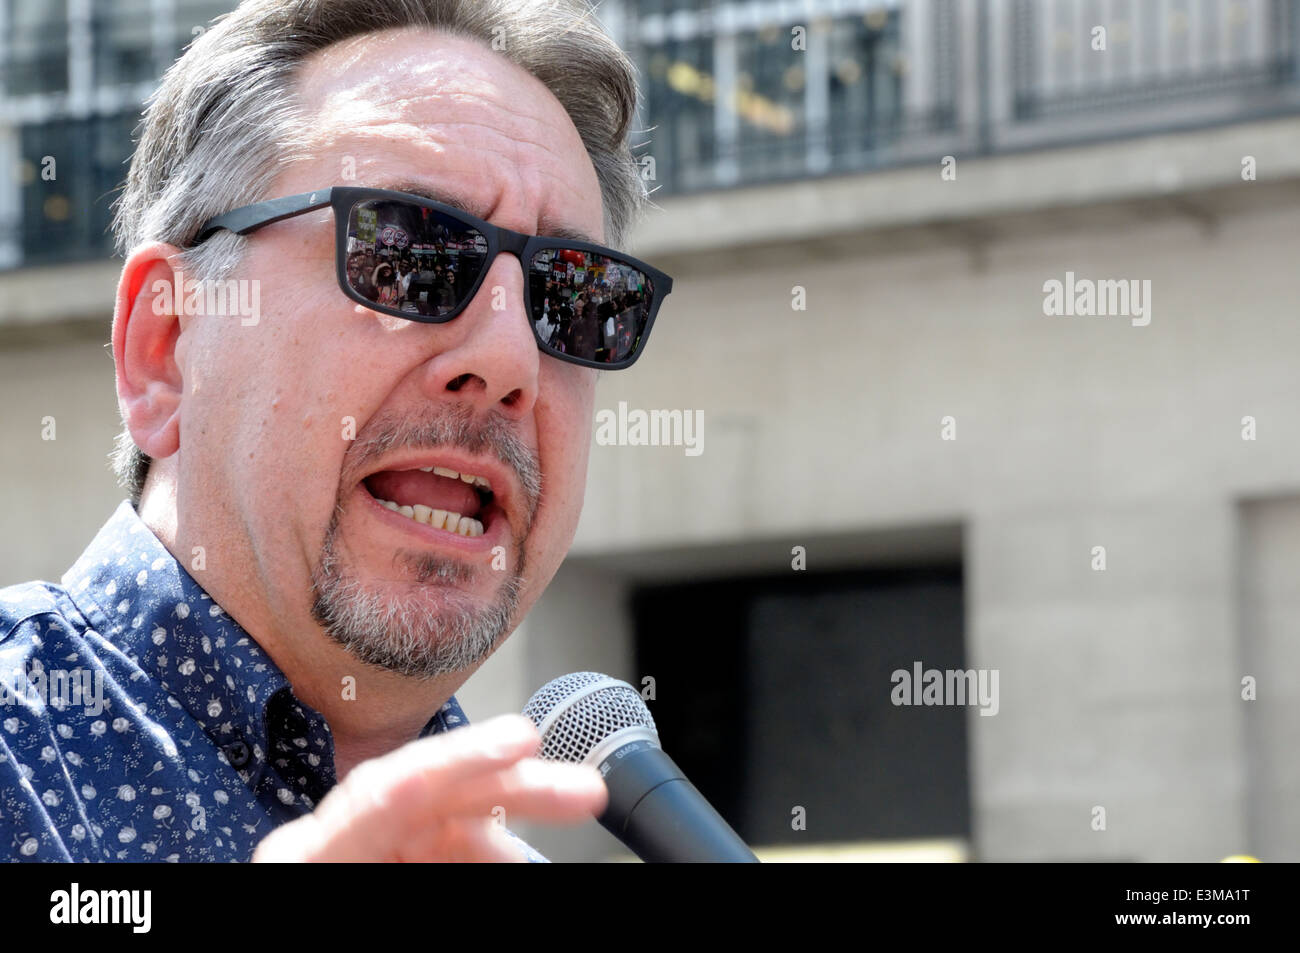 John Rees - British attivista politico, emittente, scrittore e membro di fermare la guerra coalizione - Londra, 21 giugno 2014 Foto Stock